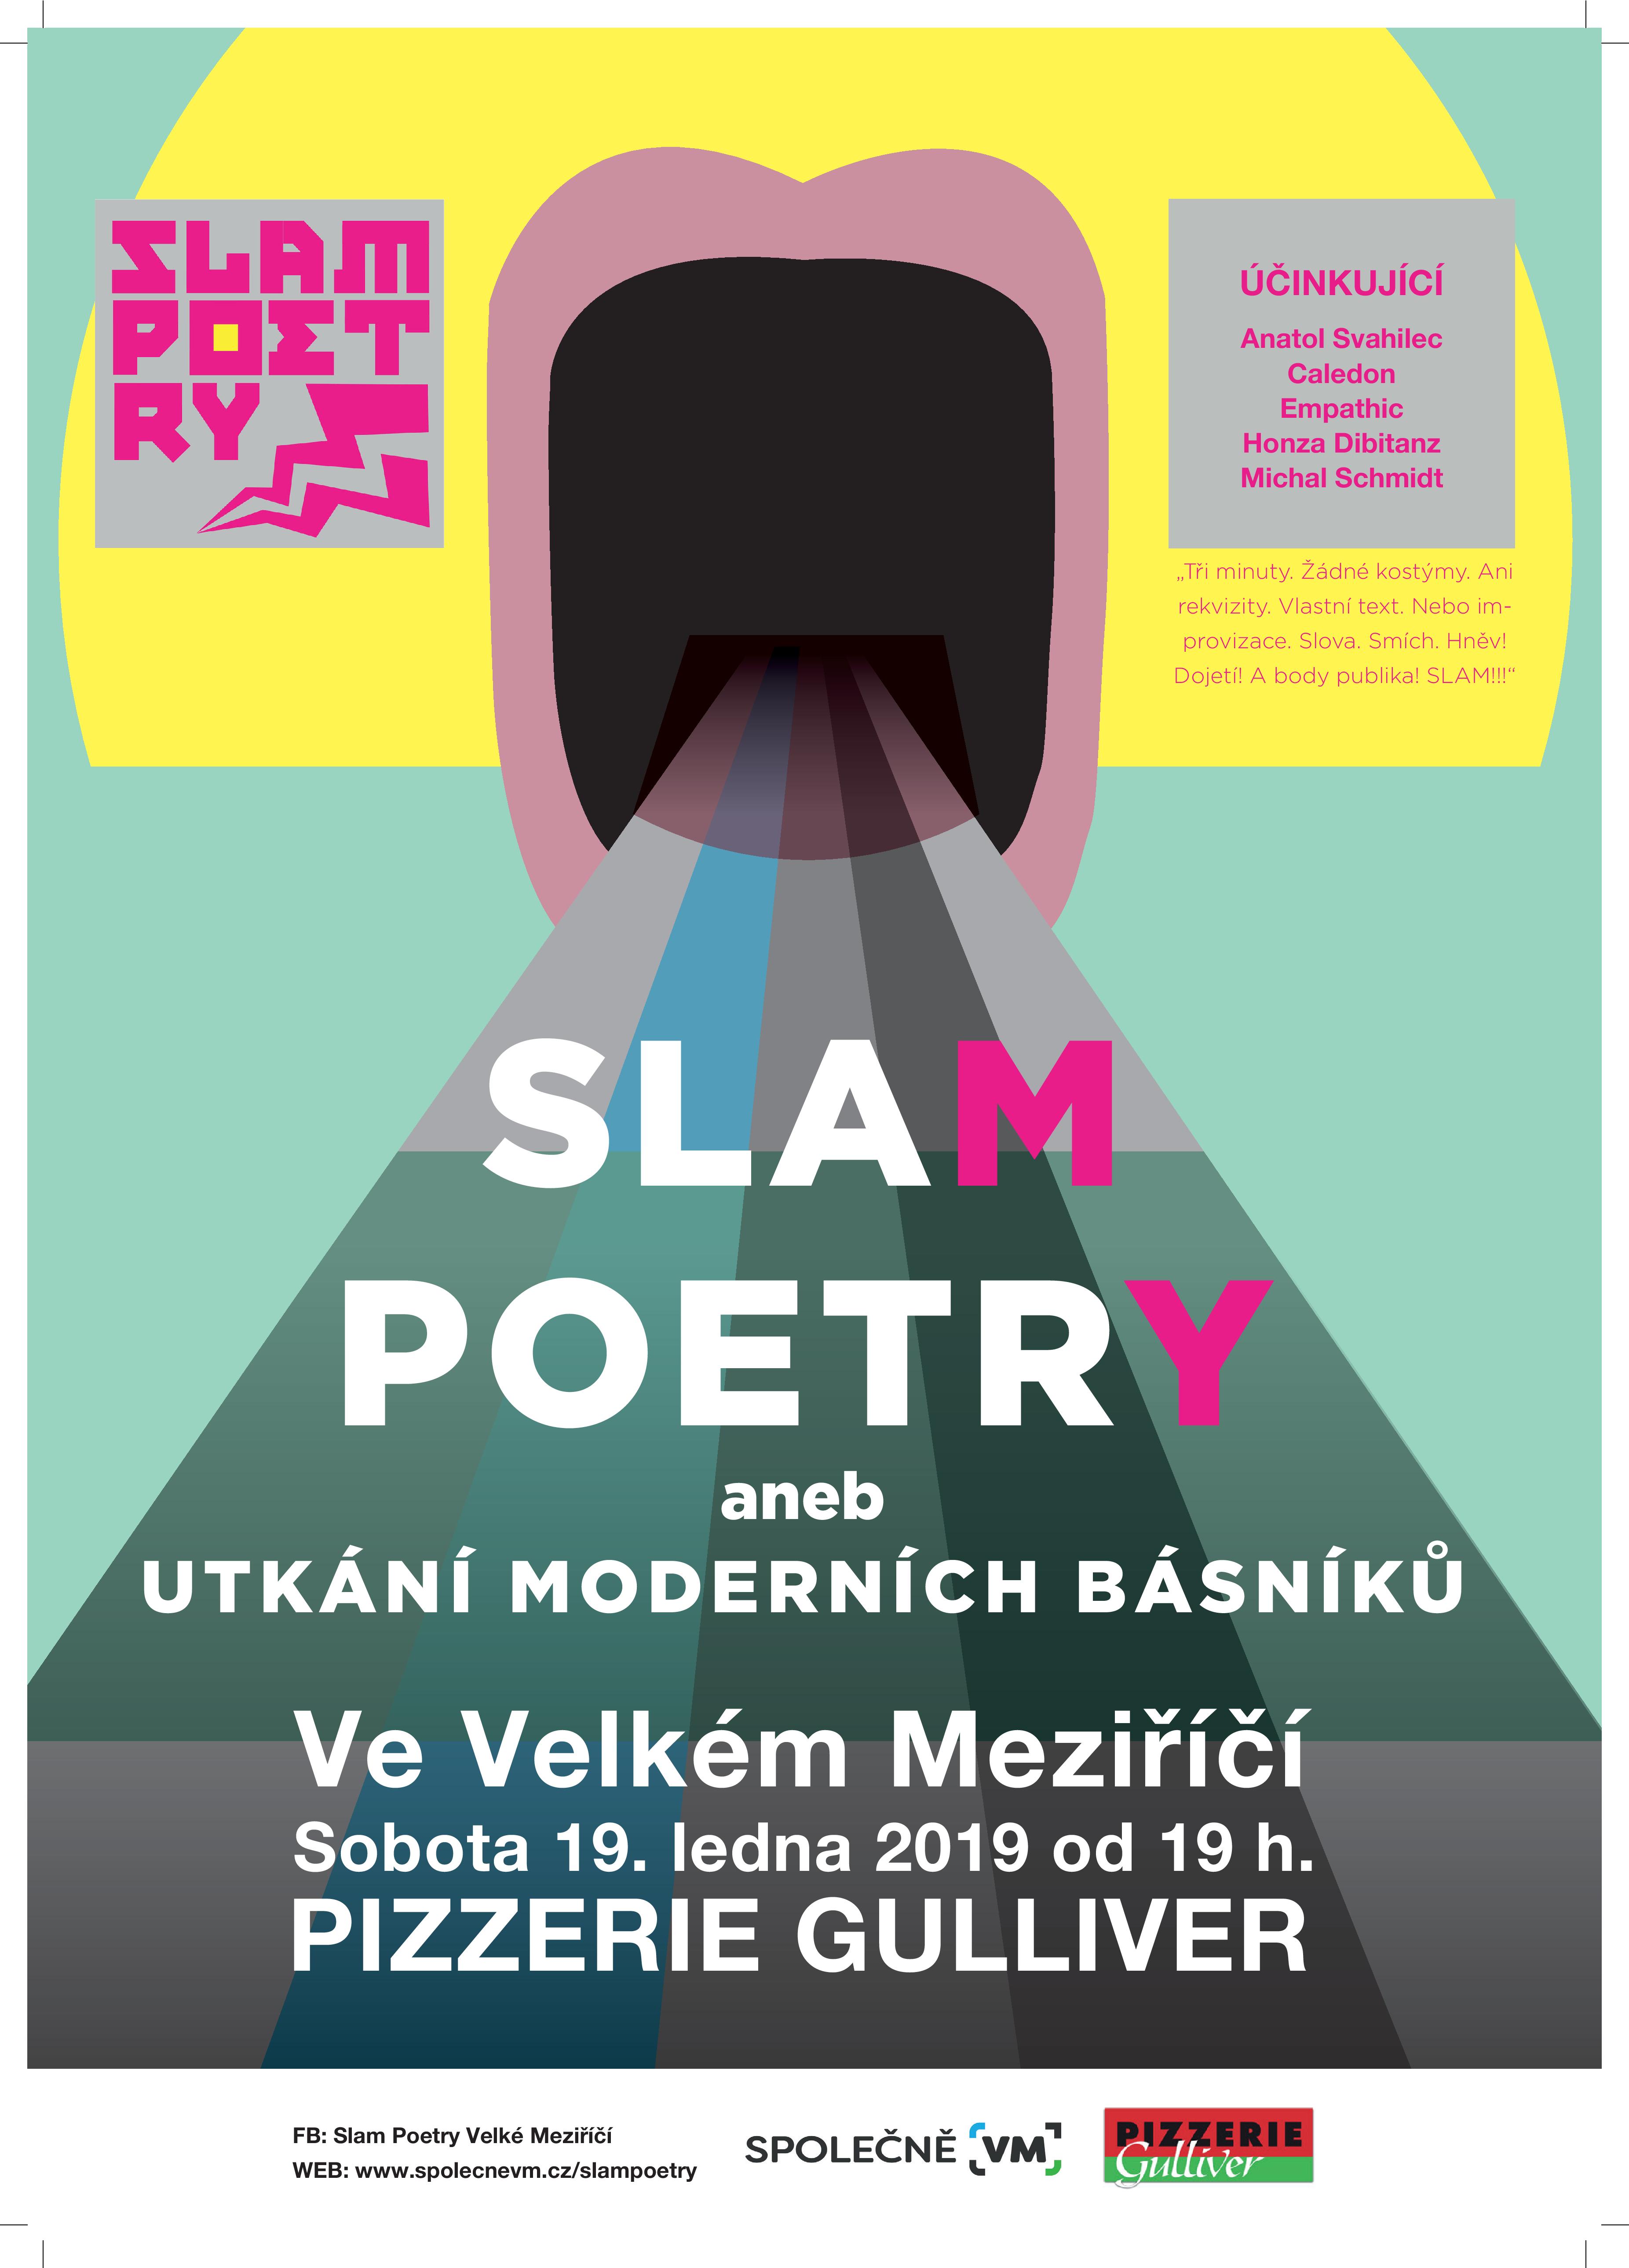 SLAM POETRY, aneb utkání moderních básníků